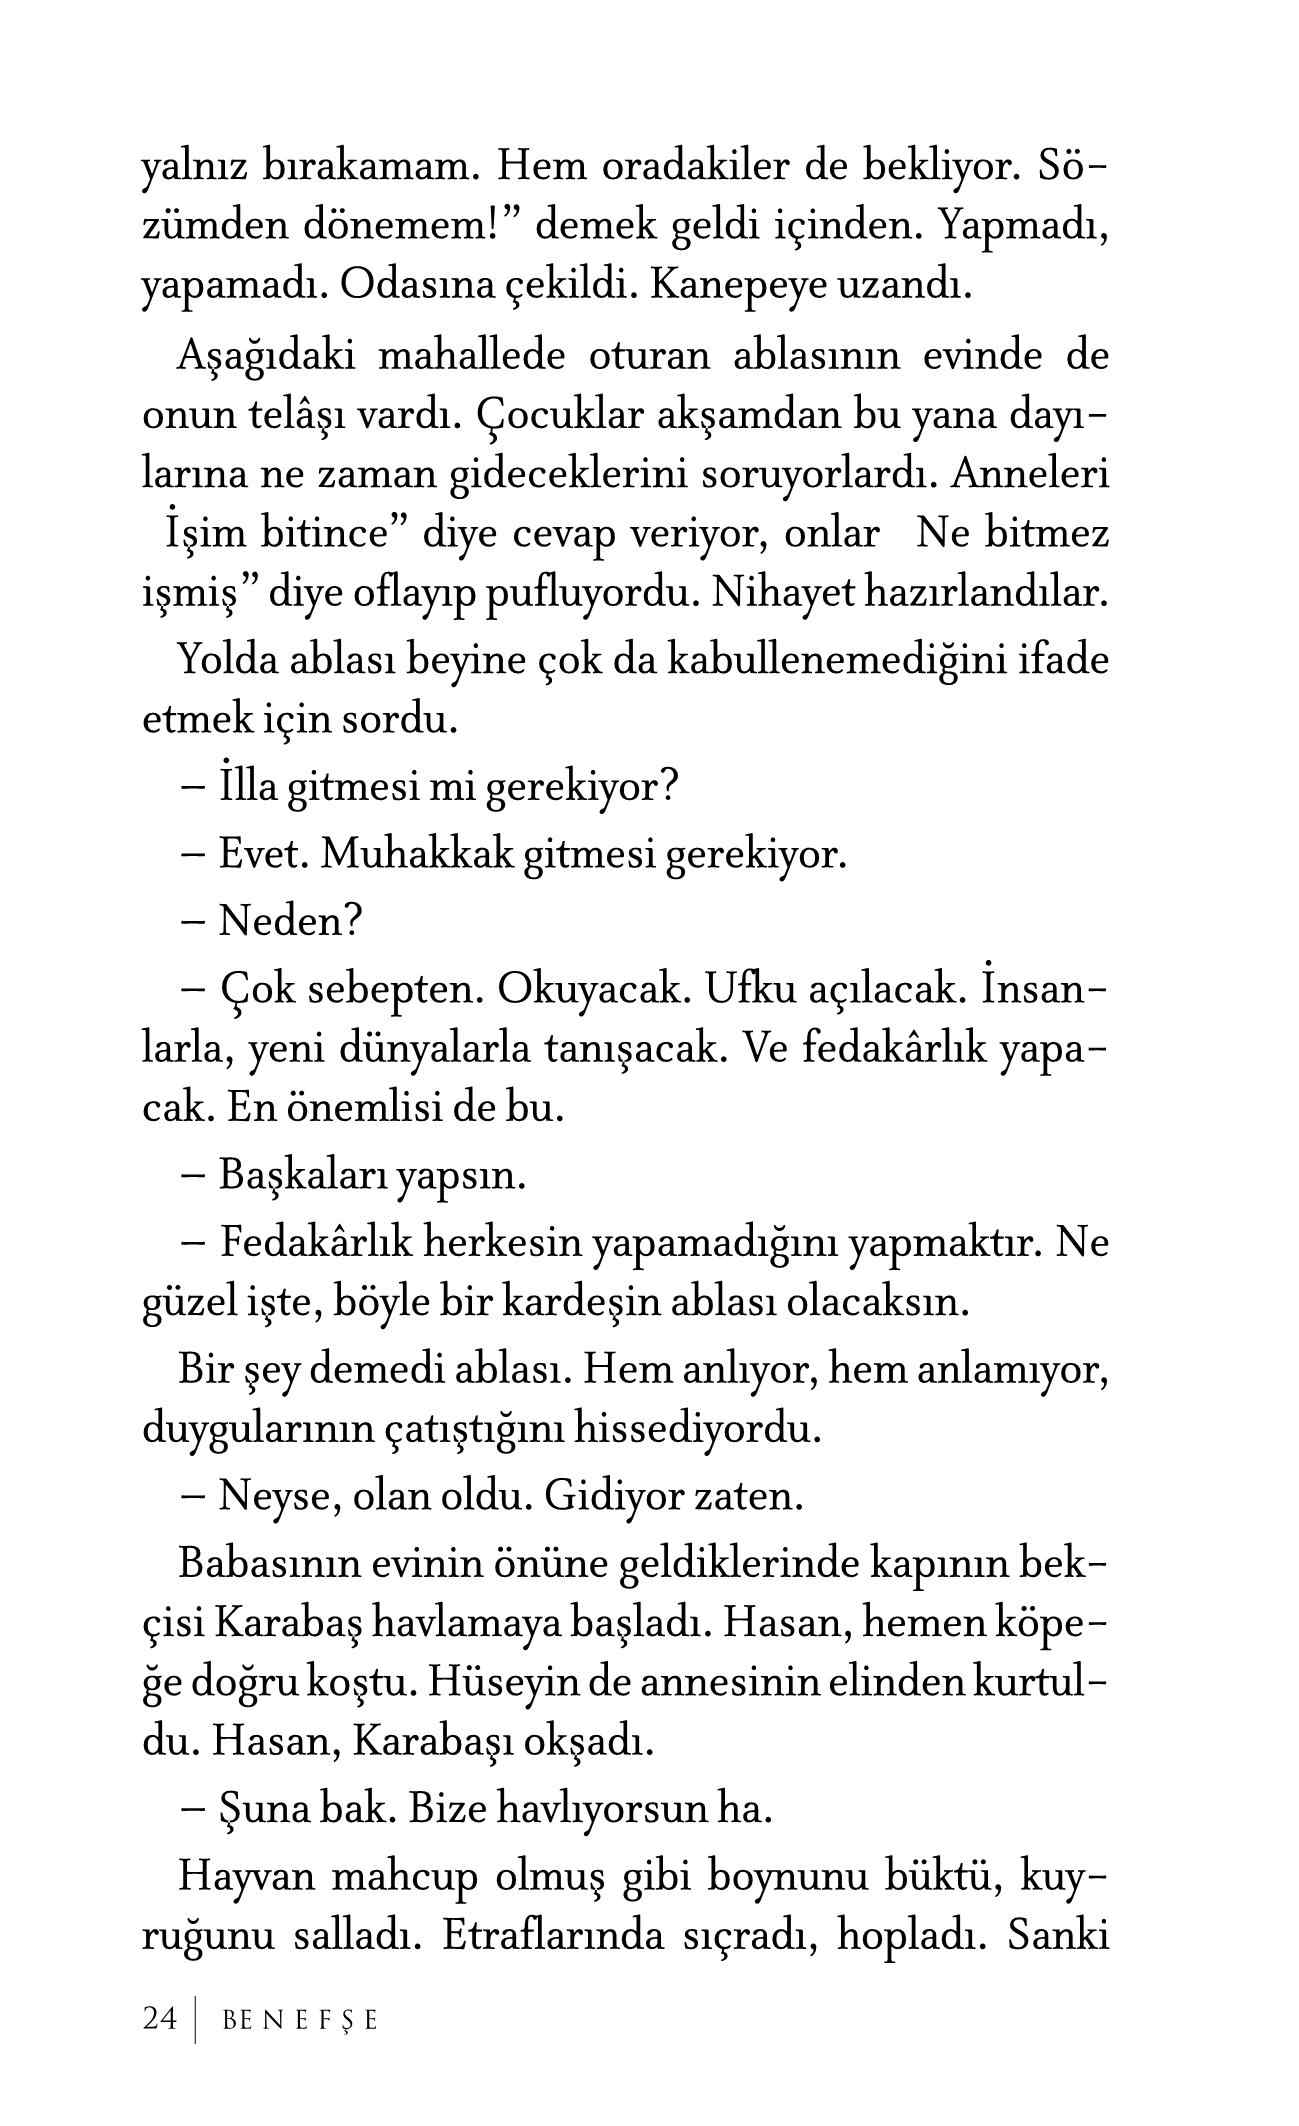 Mehmet Akar - Benefse - KaynakYayinlari.pdf, 337-Sayfa 